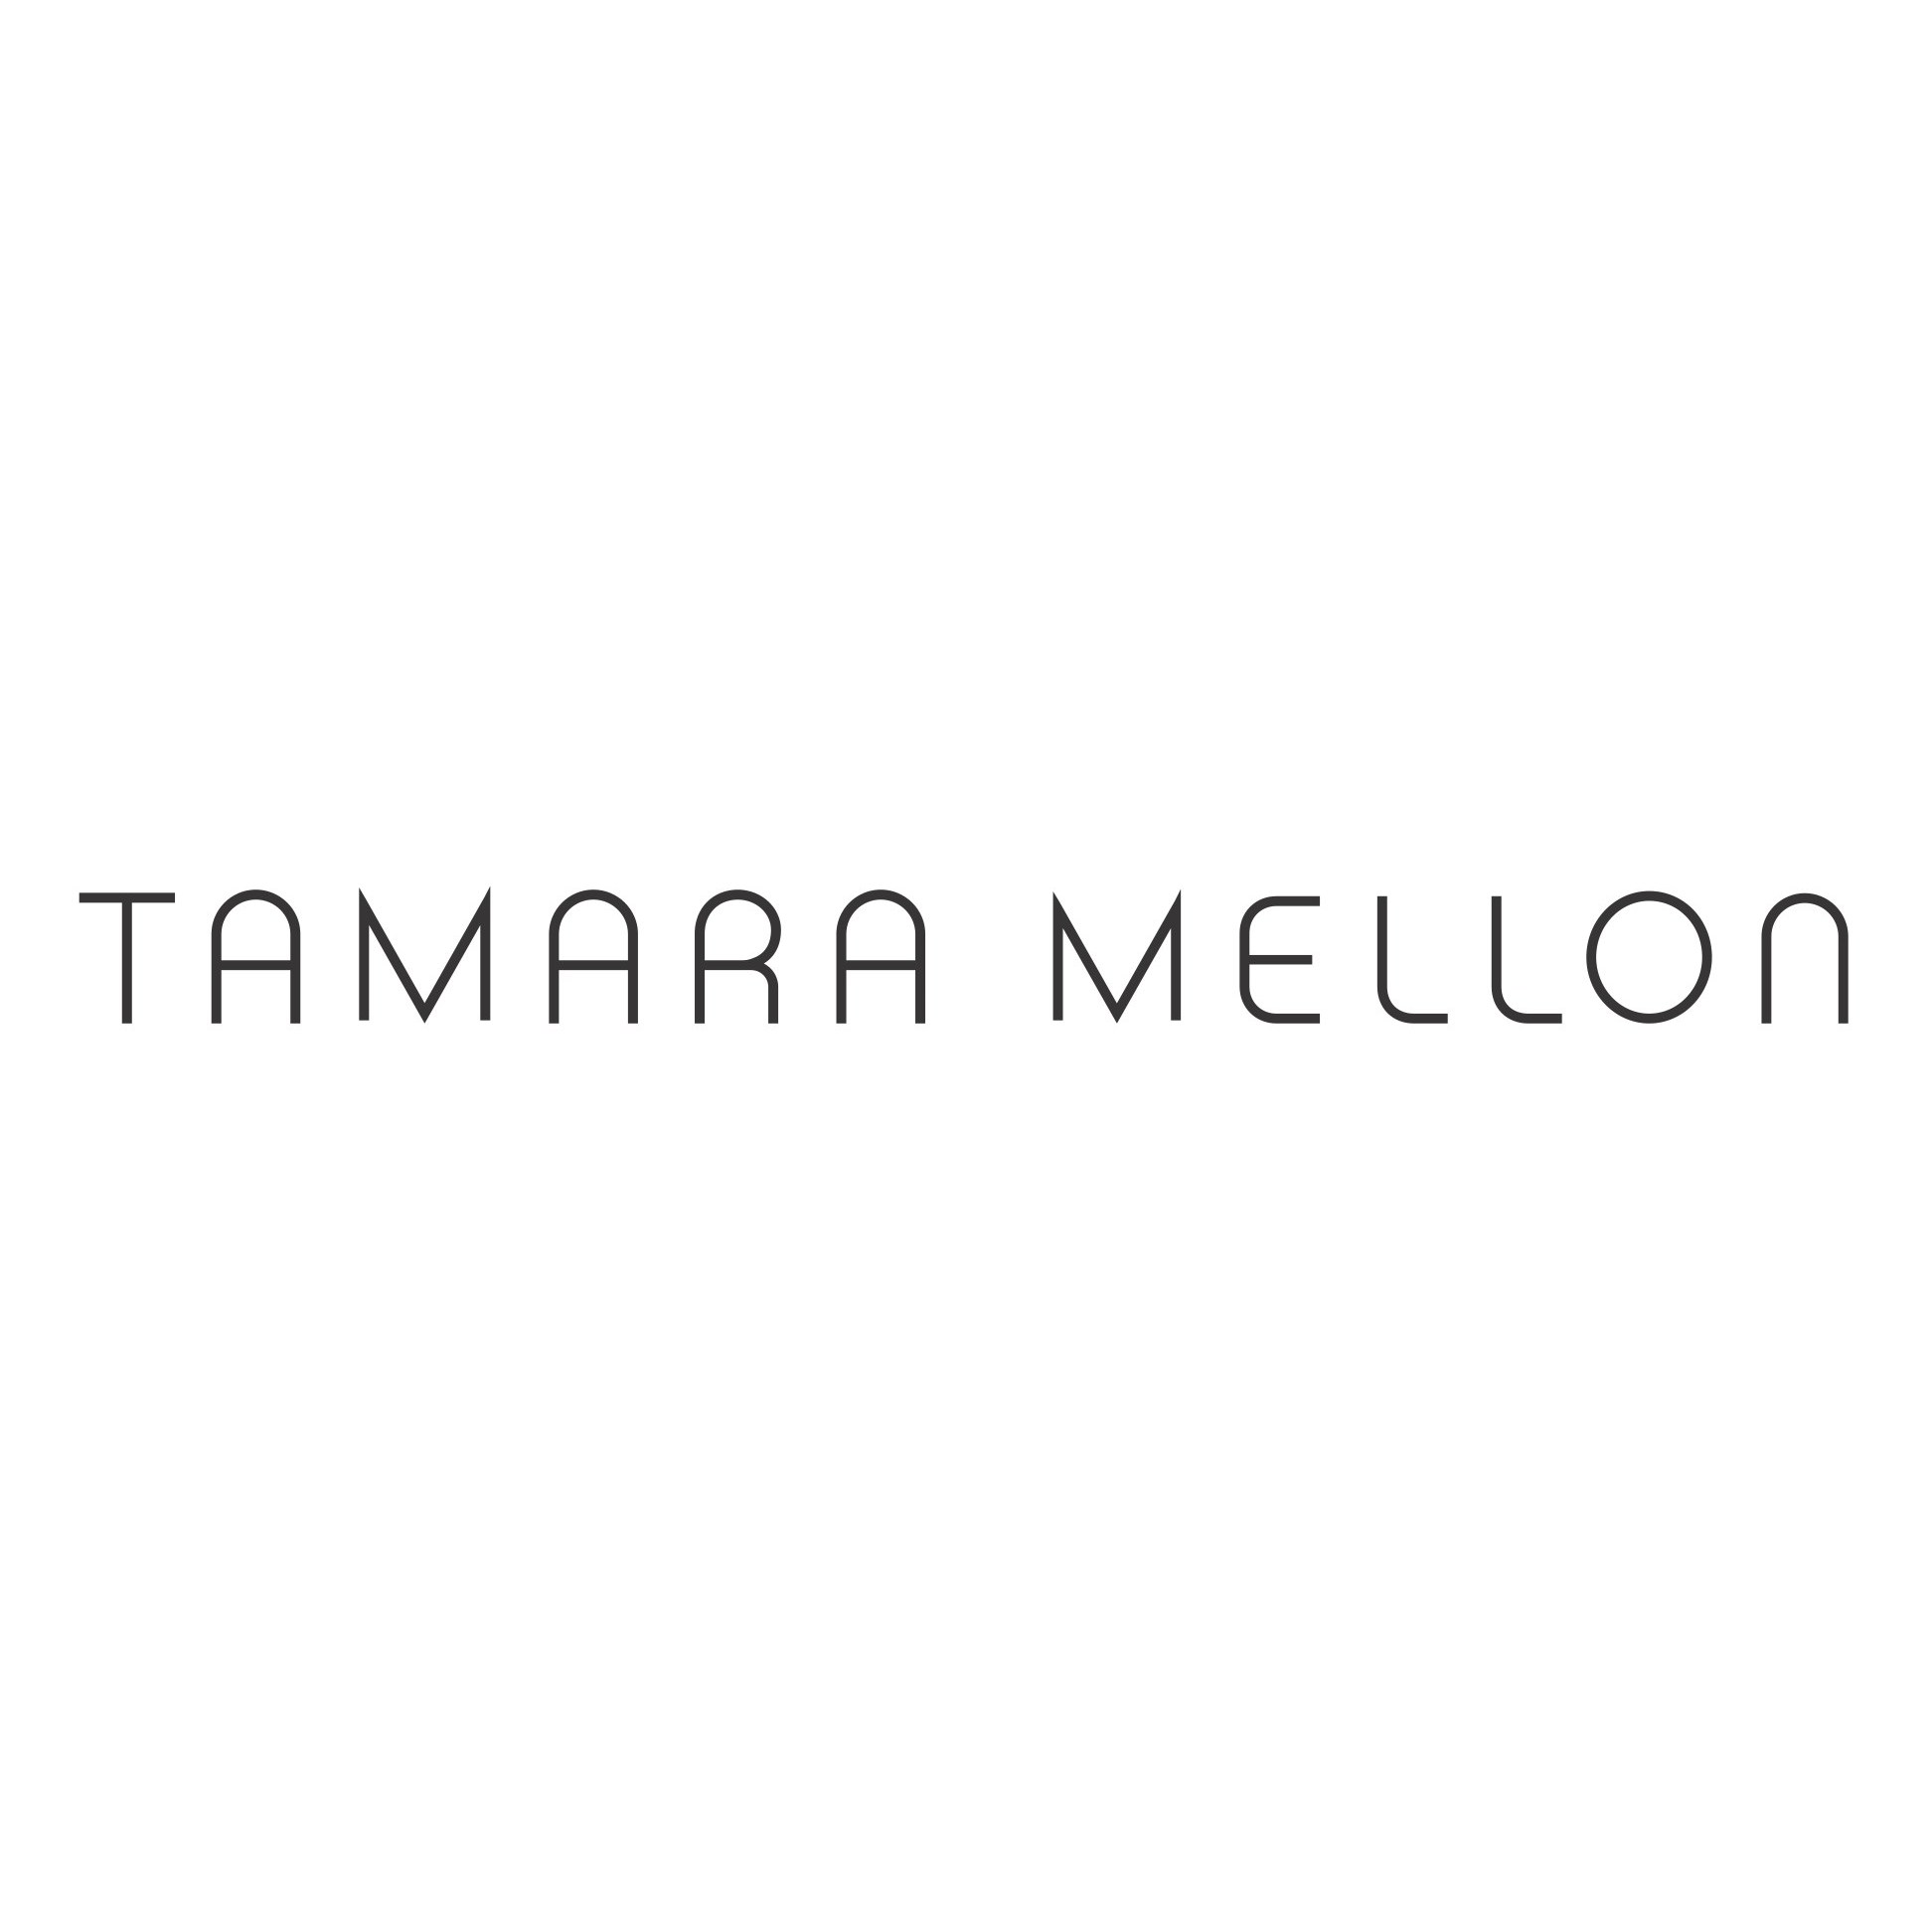 Promo codes Tamara Mellon